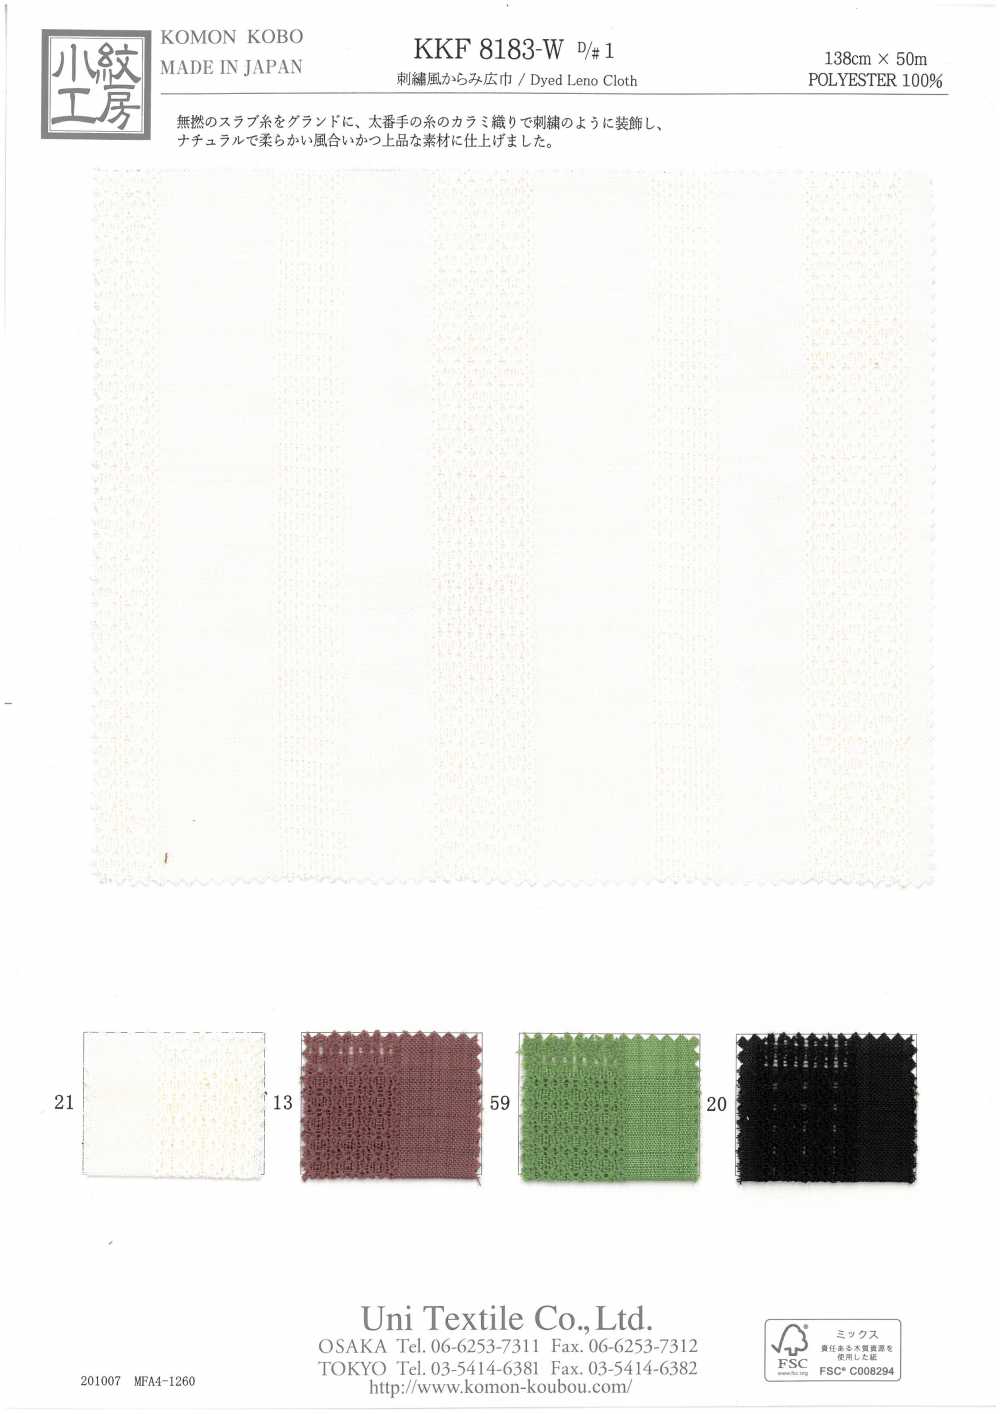 KKF8183-W-D/1 Estilo De Bordado Largura Larga[Têxtil / Tecido] Uni Textile